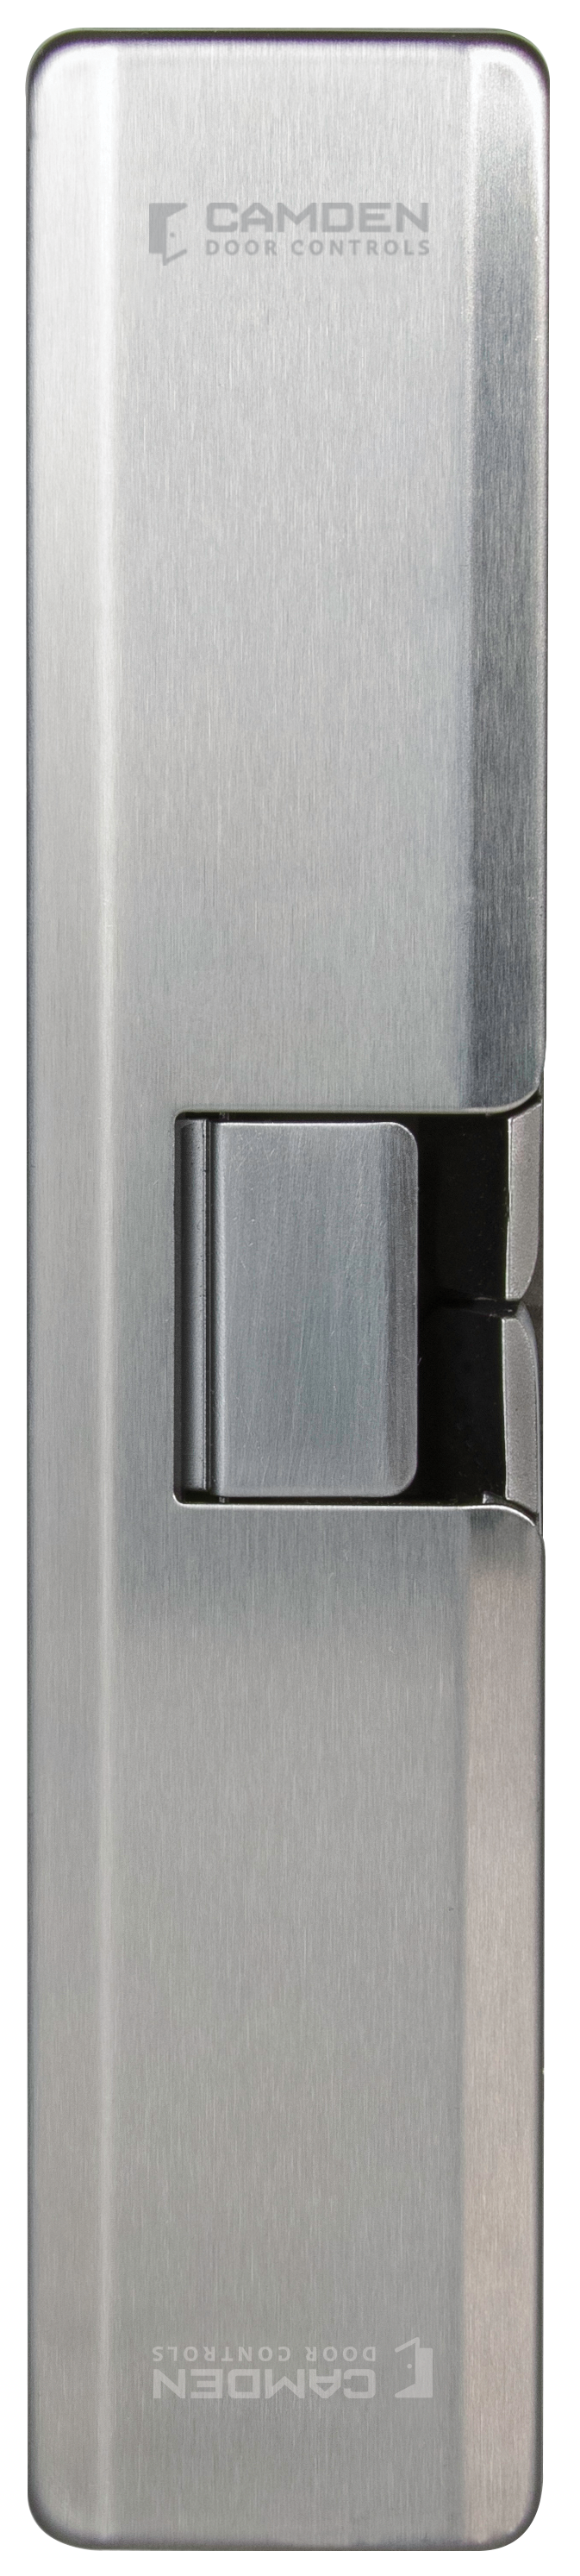 CM-1200 & CM-2200 Series: Acier inoxydable, Encastré - interrupteurs à clé - Activation